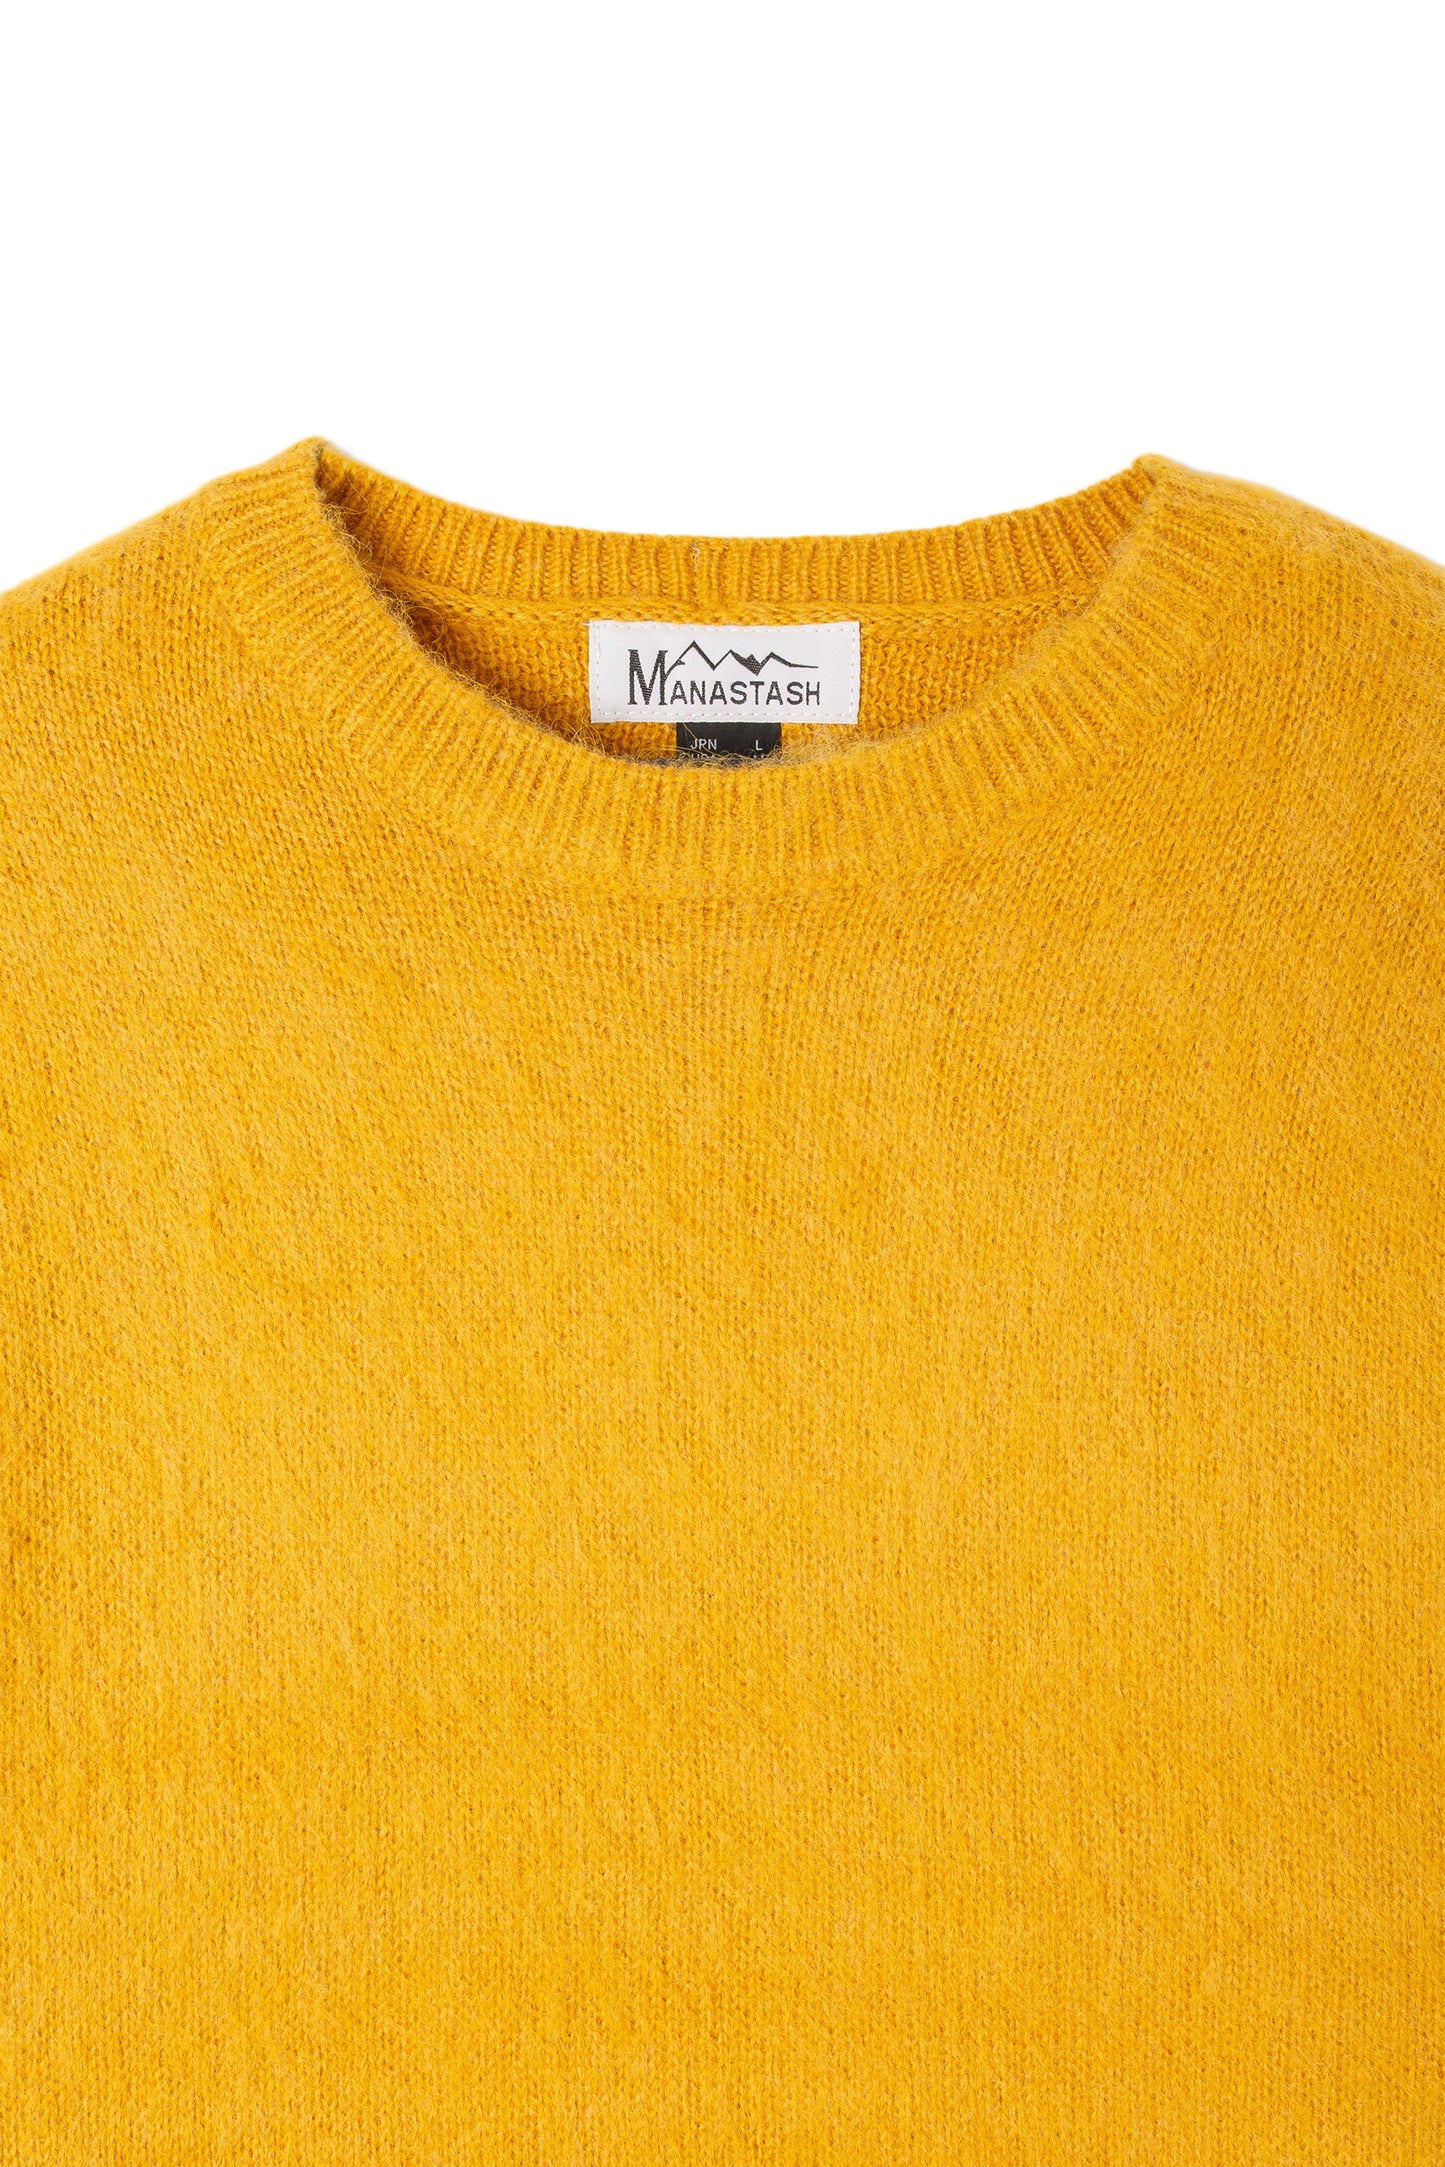 Aberdeen Sweater (Mustard)